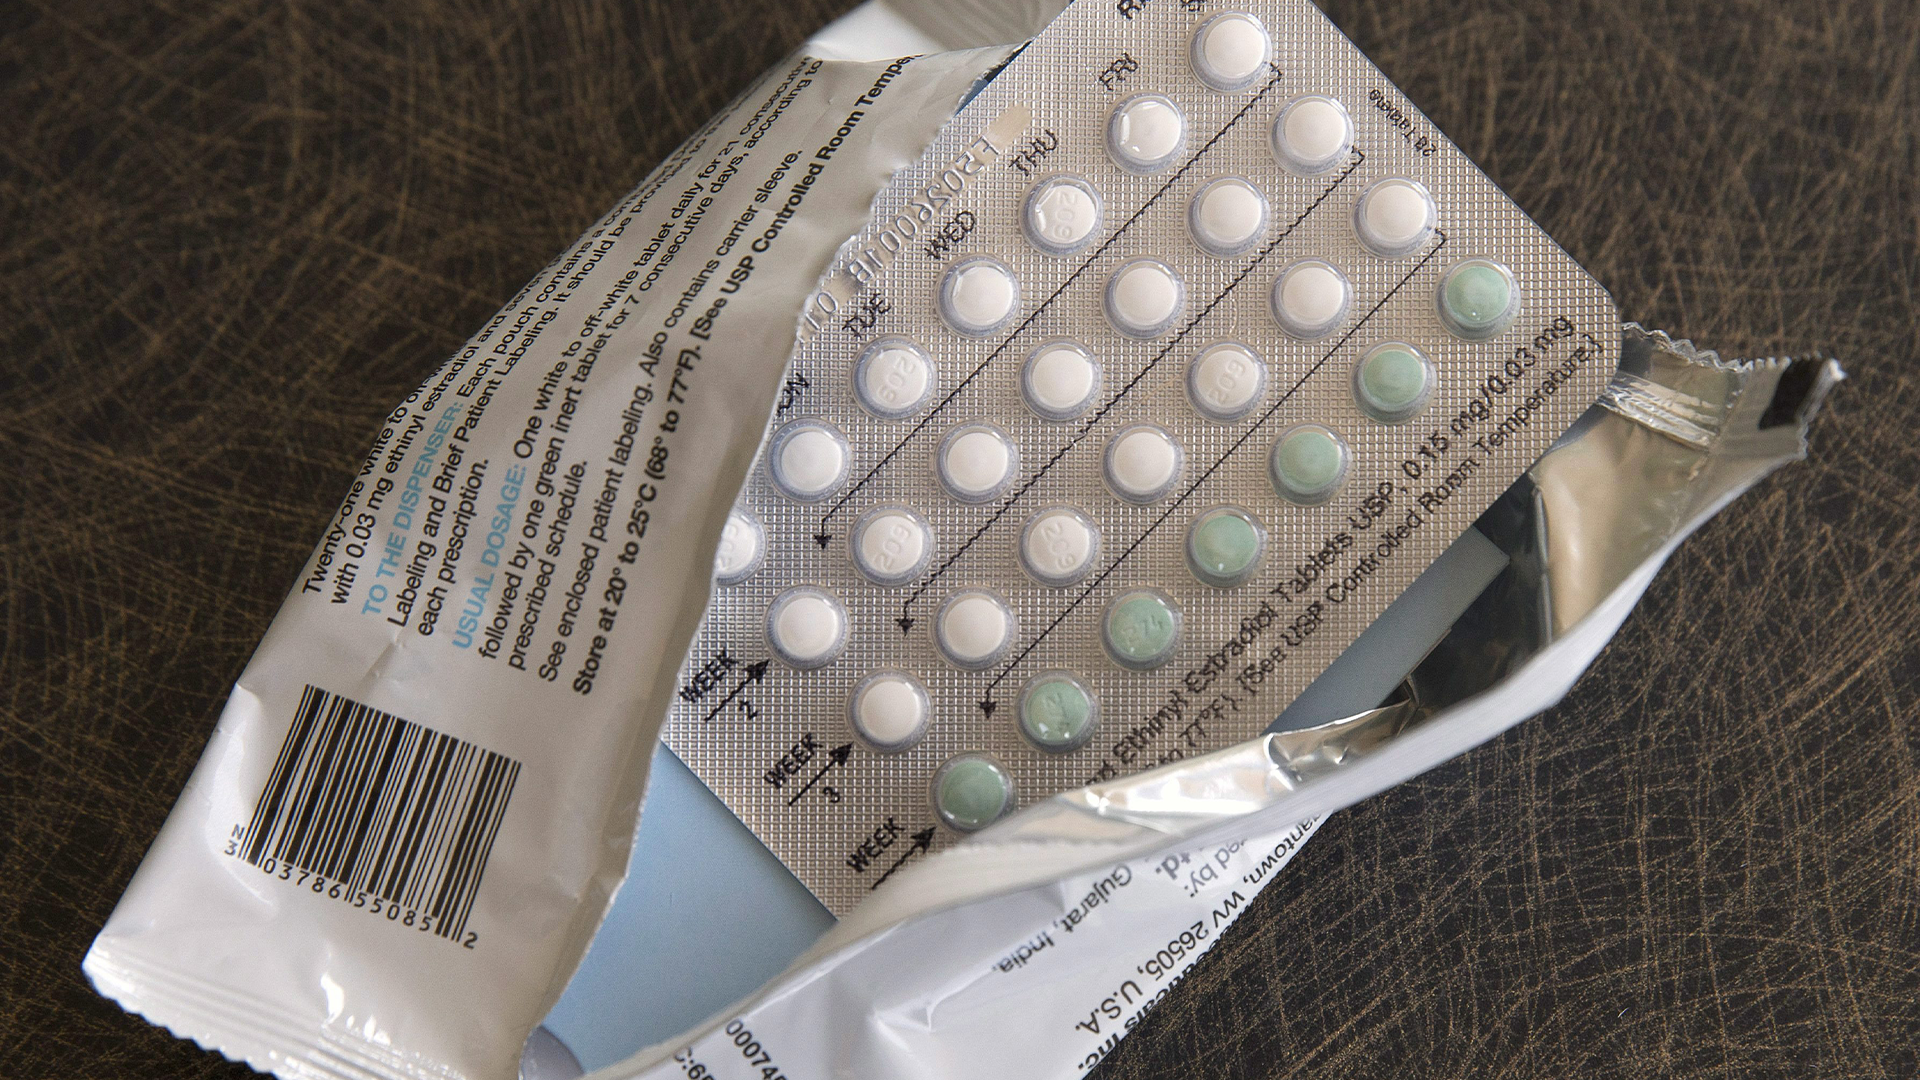 Le parti s'inspire de la Colombie-Britannique, qui a récemment annoncé que la contraception sera gratuite pour tous dès le 1er avril prochain